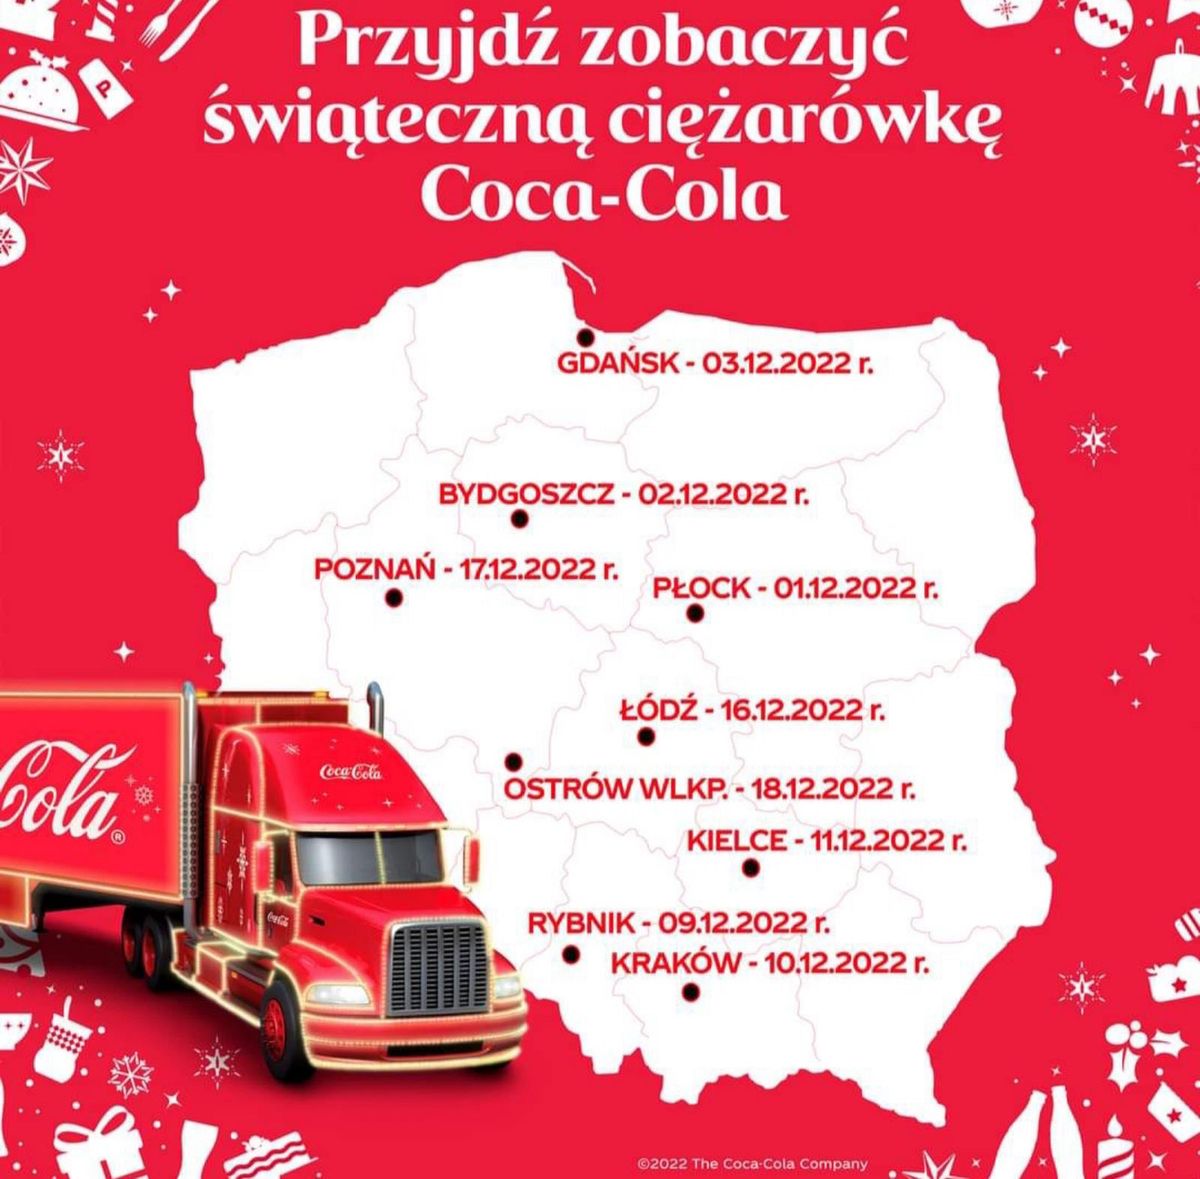 Різдвяна вантажівка Coca-Cola завітає до польських міст